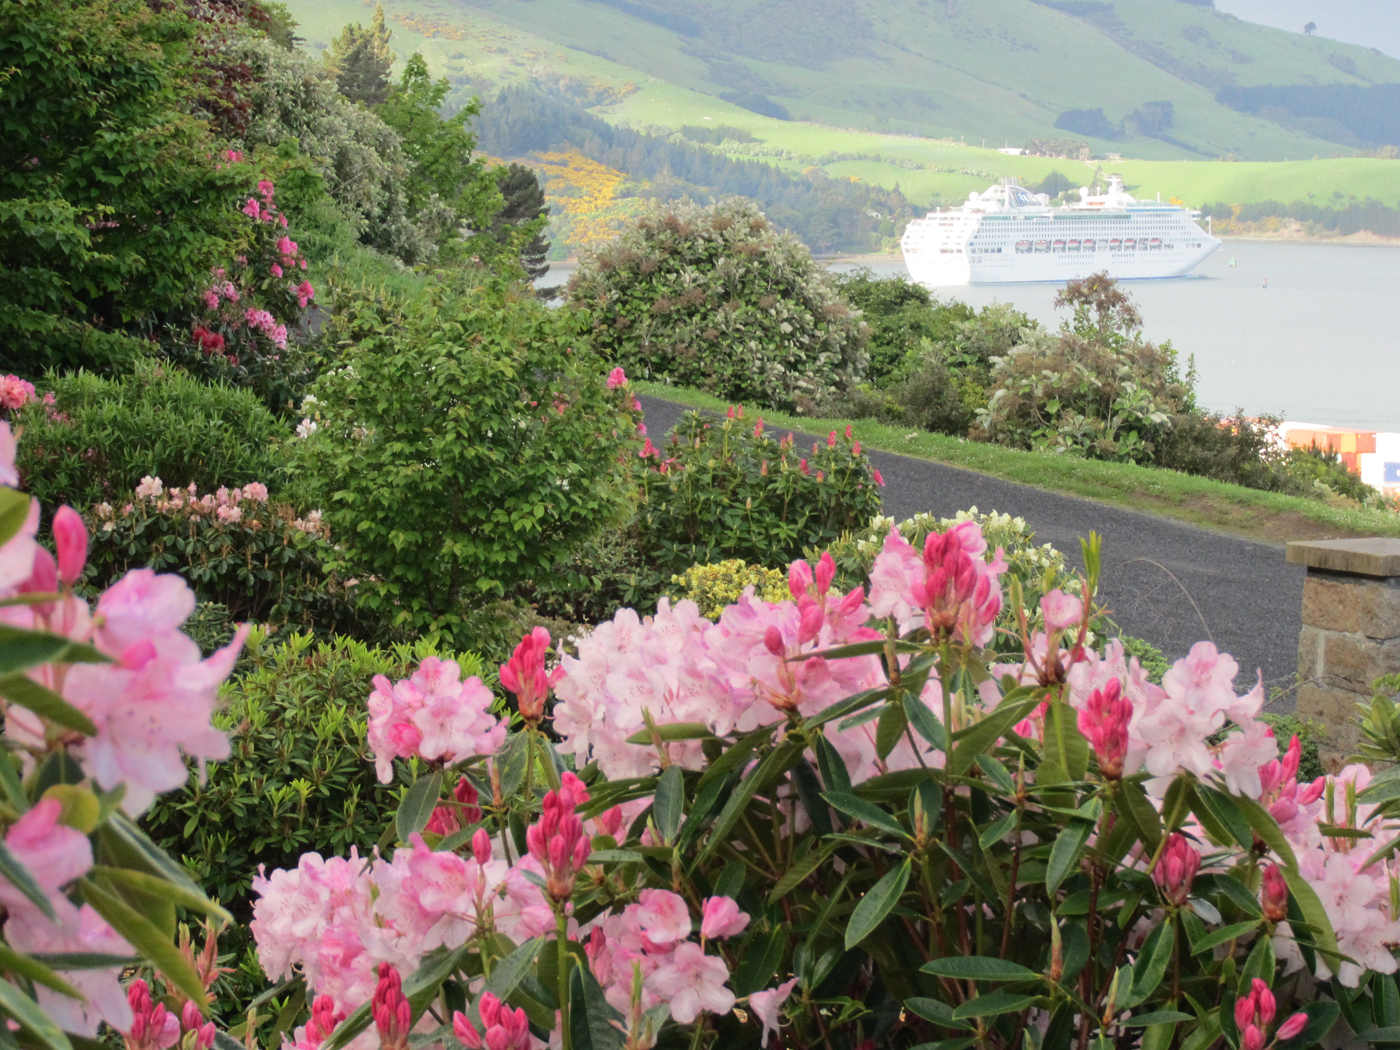 Lady Thorn Rhododendron Dell Public Garden @Dunedin Gardens